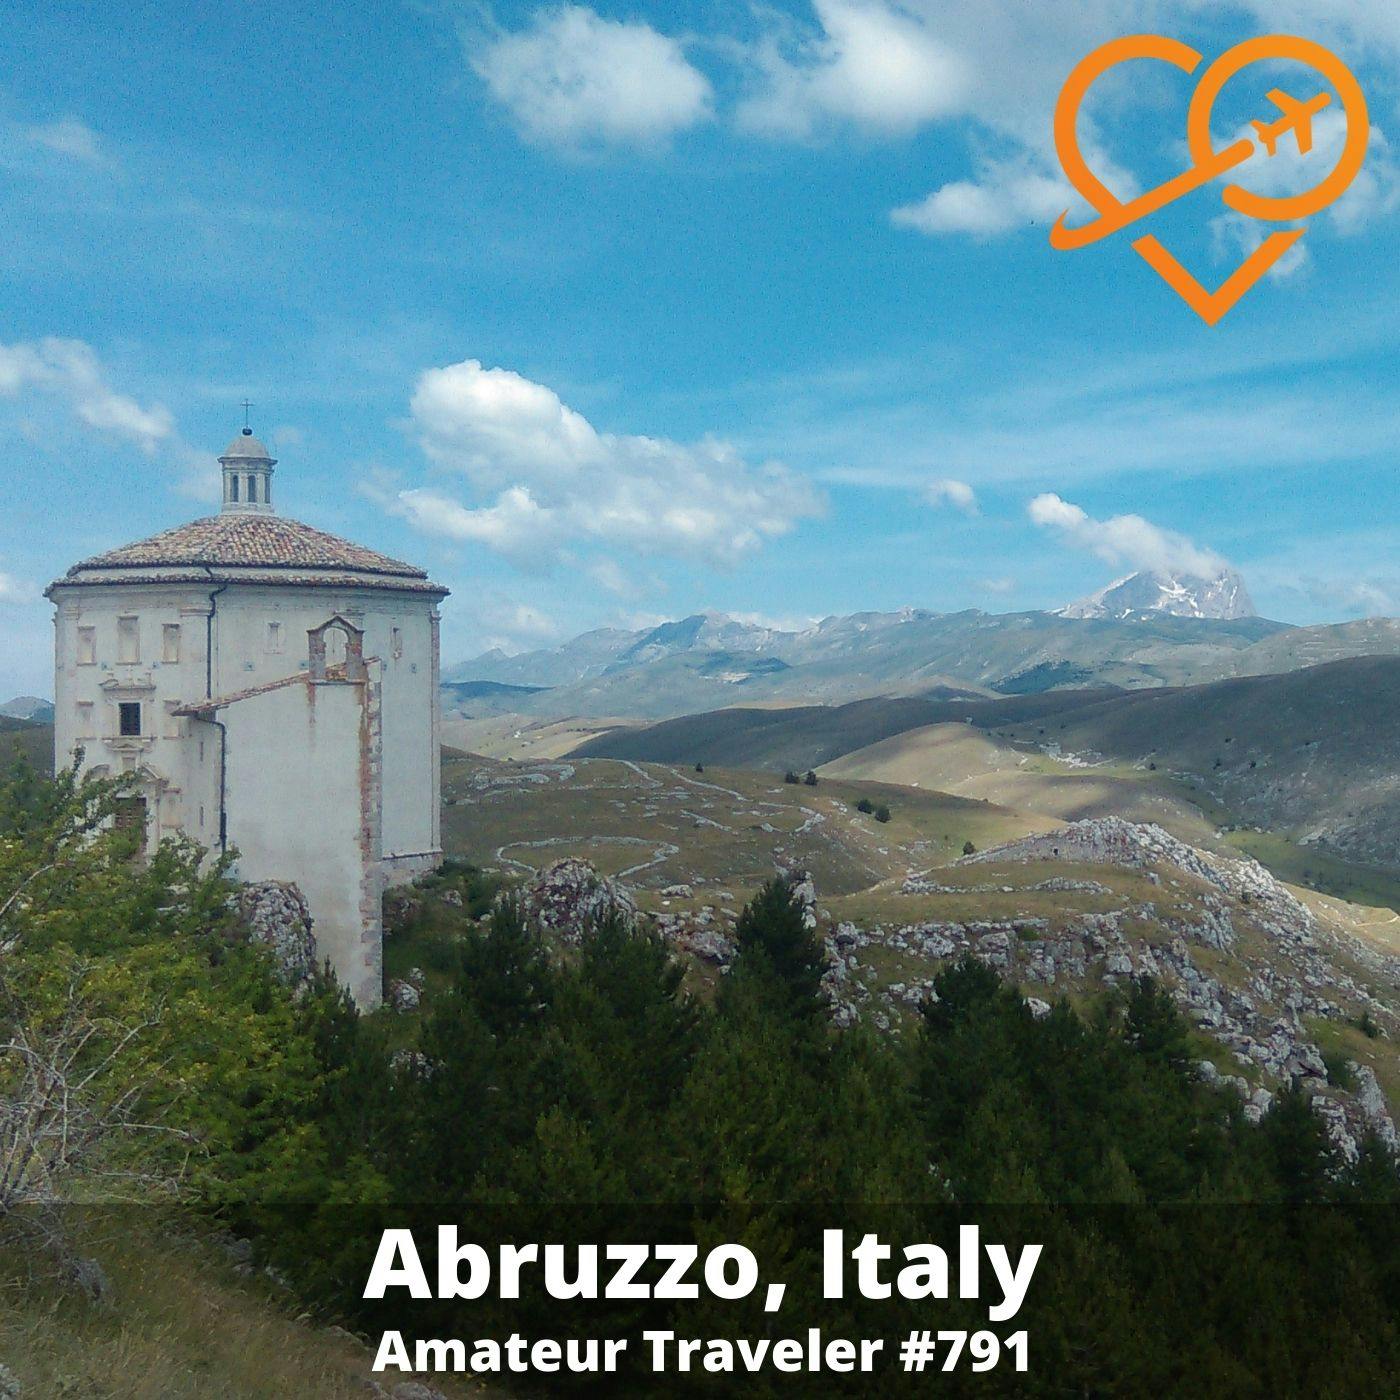 AT#791 - Travel to Abruzzo, Italy